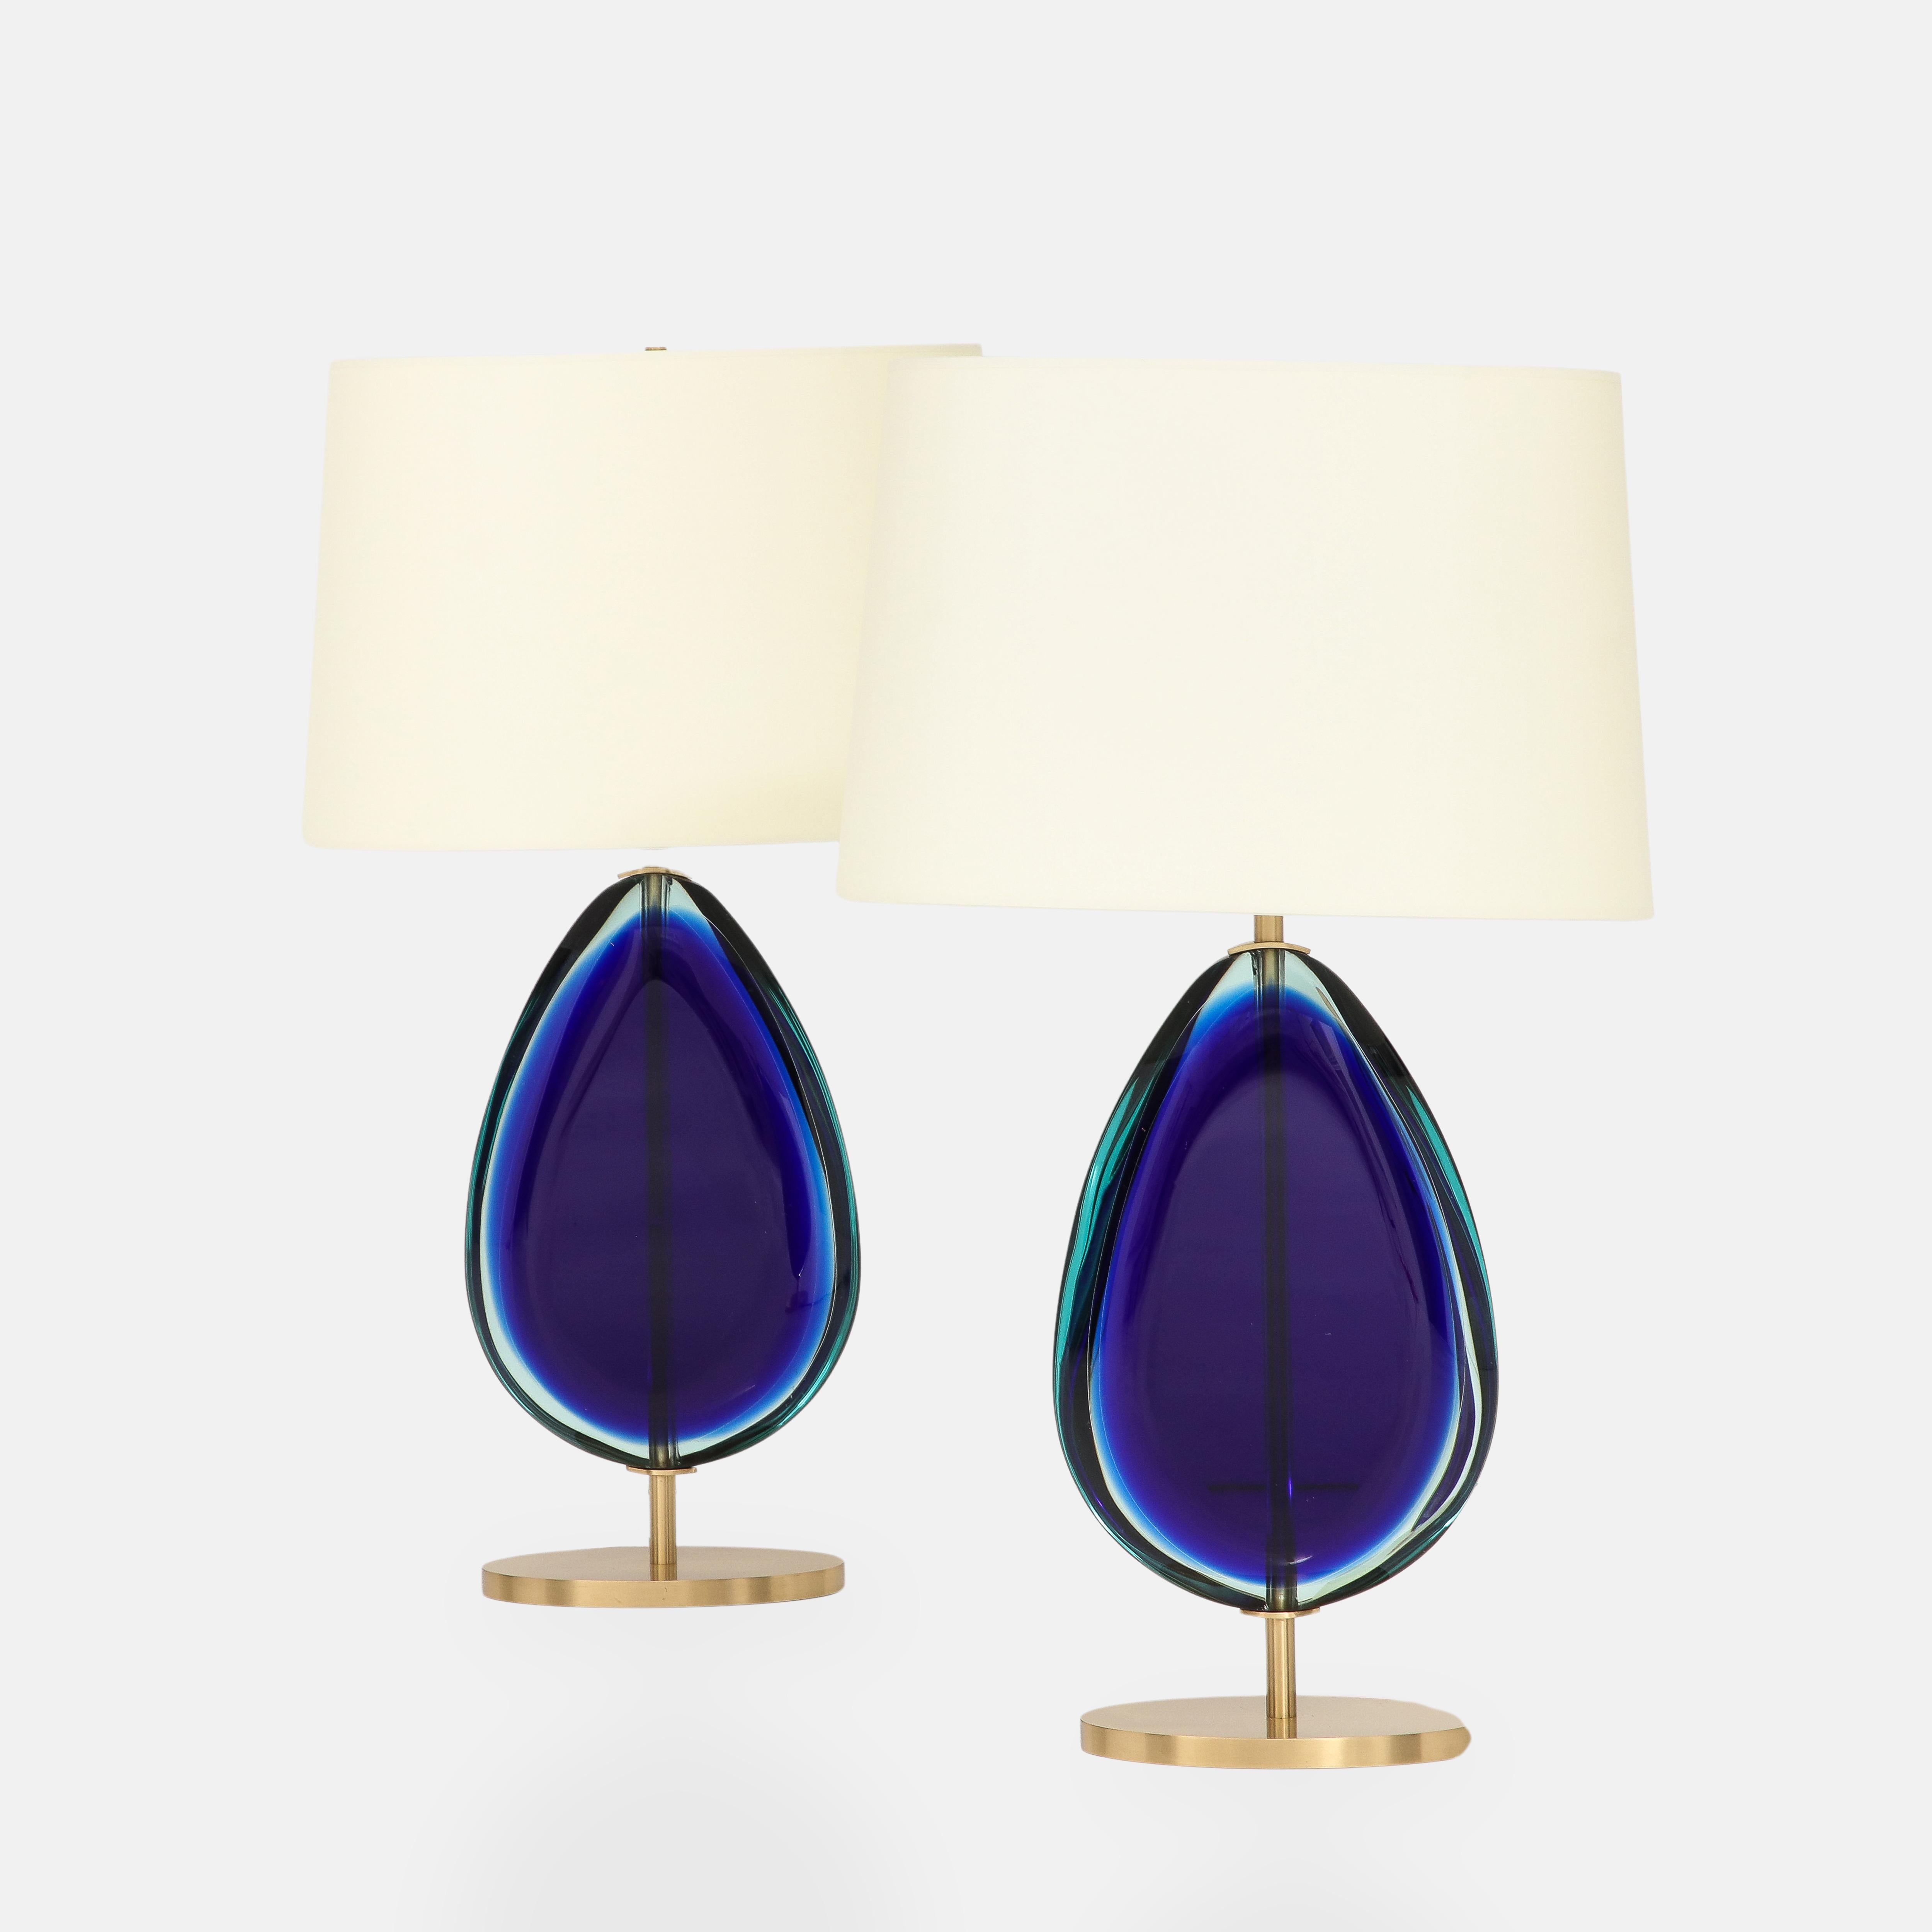 Paire de lampes de table contemporaines Effetto Vetro, chacune avec un grand verre bleu en forme de goutte suspendu à une tige en laiton satiné et à une base ovale avec des abat-jours ovales en papier ivoire.  Ces jolies et élégantes lampes de table